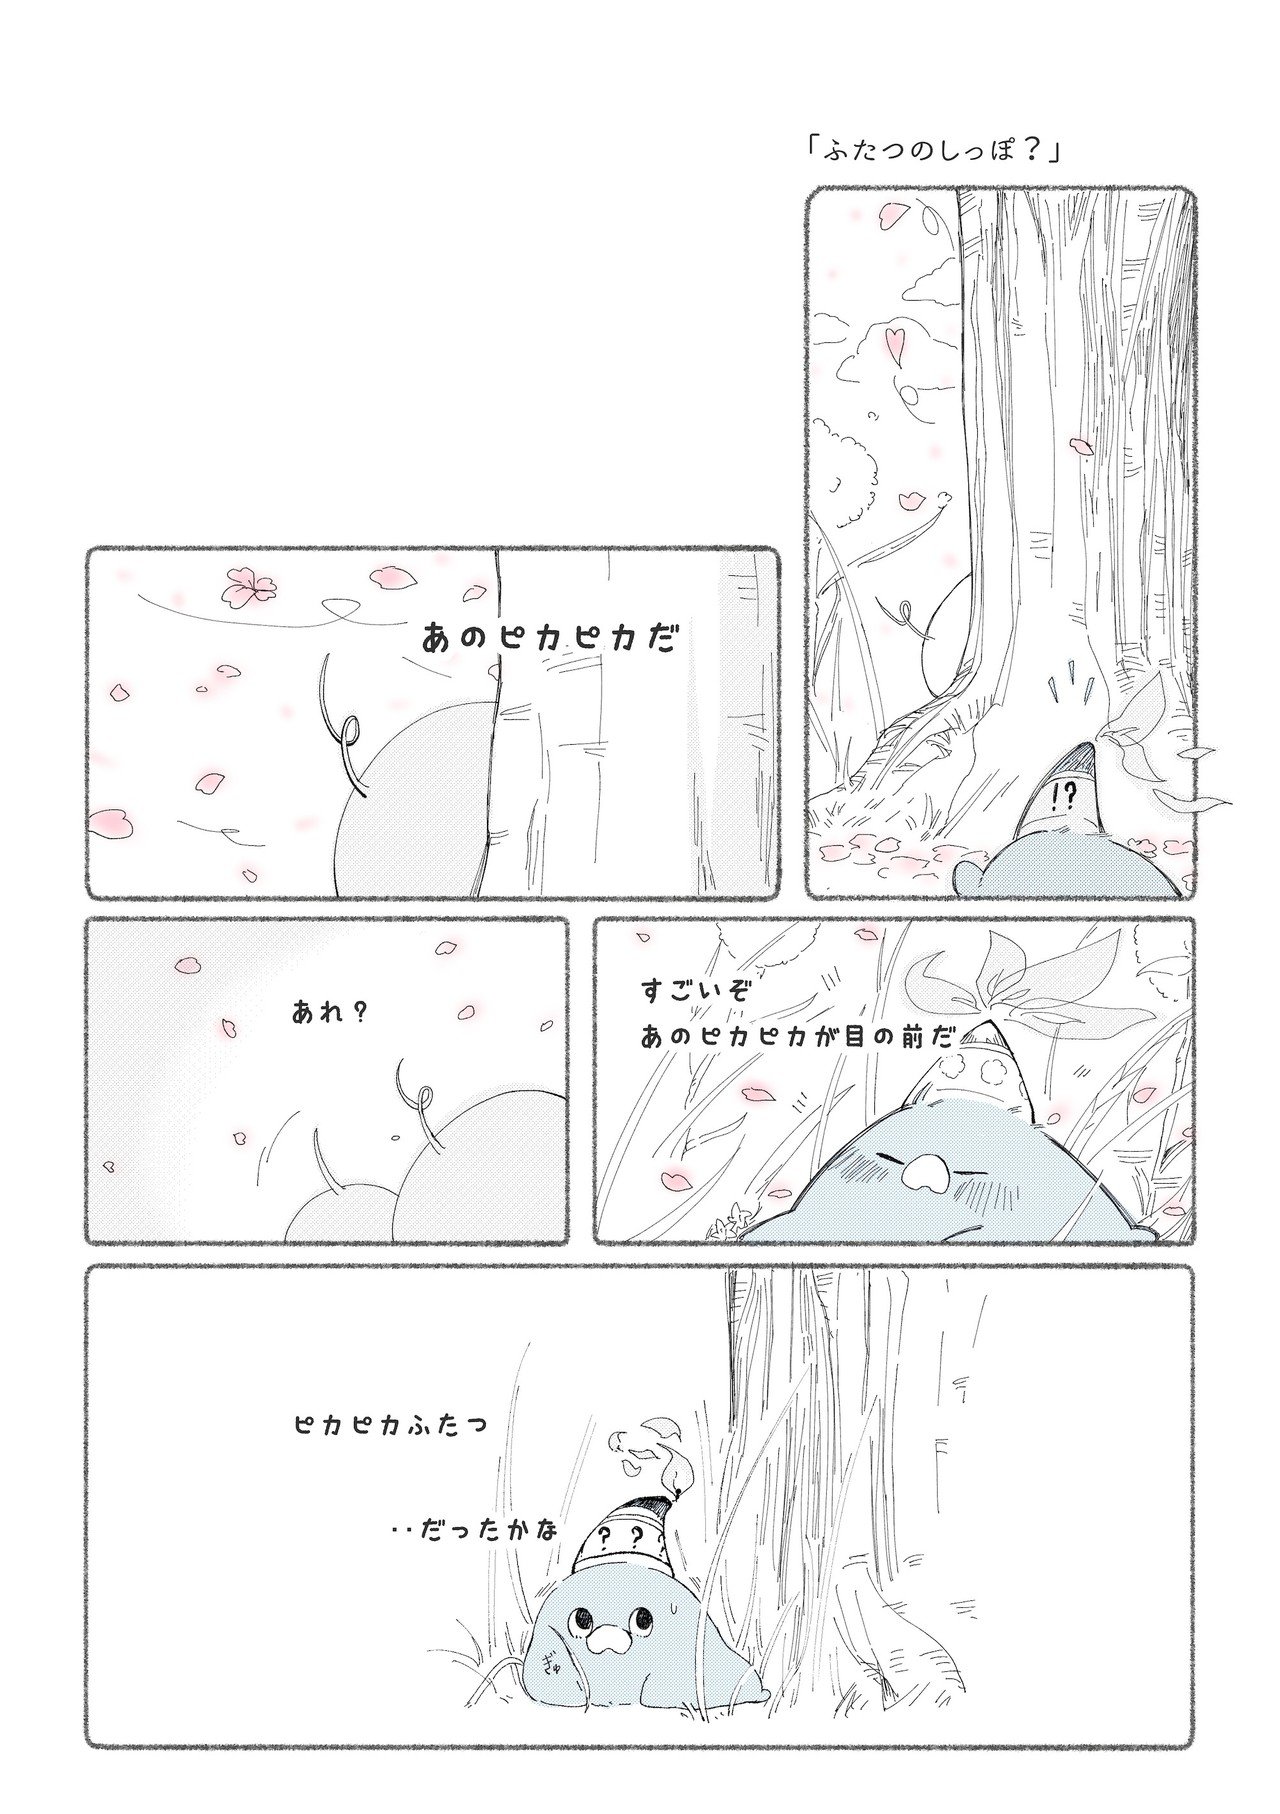 ロウソクくん_漫画3